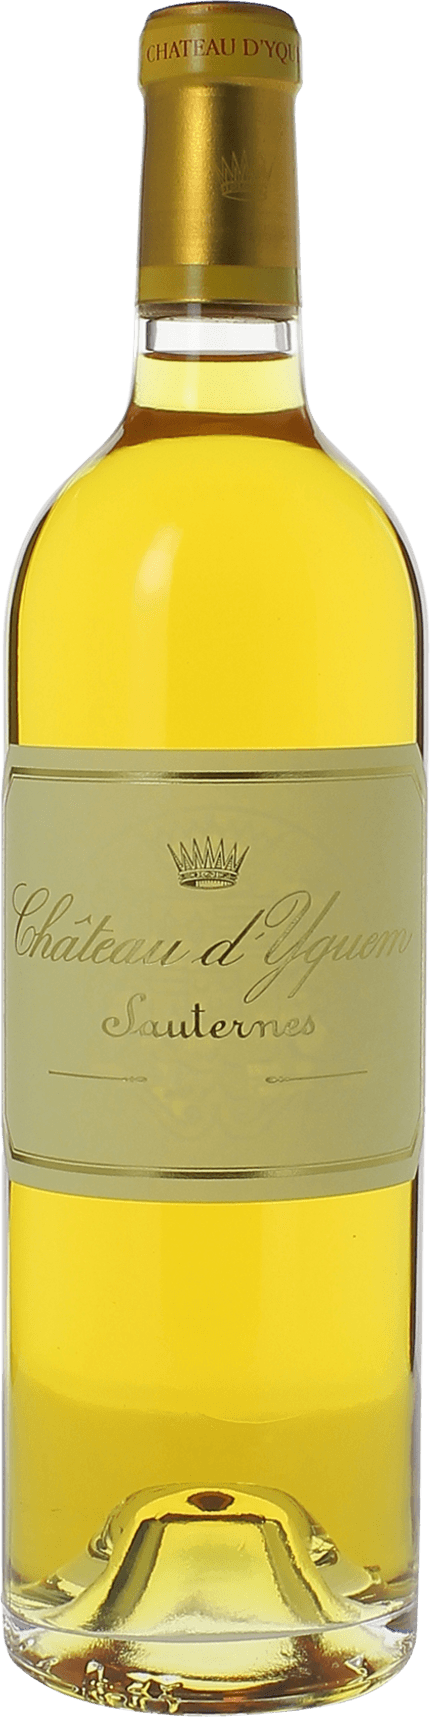 Yquem 1990 1er Grand cru class Sauternes, Bordeaux blanc